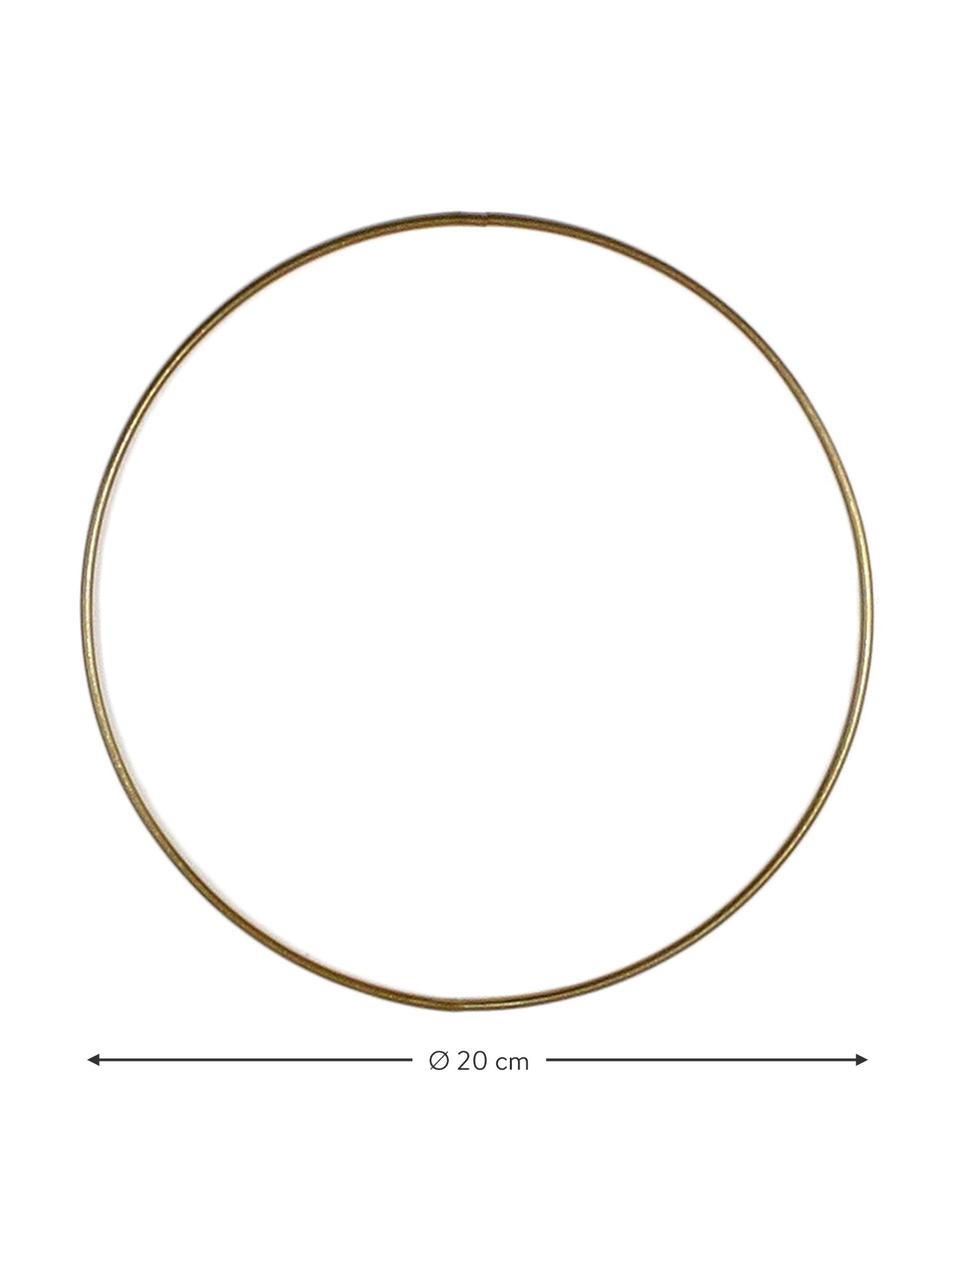 Anello in metallo color oro Rondon, Metallo verniciato, Ottonato, Ø 20 cm